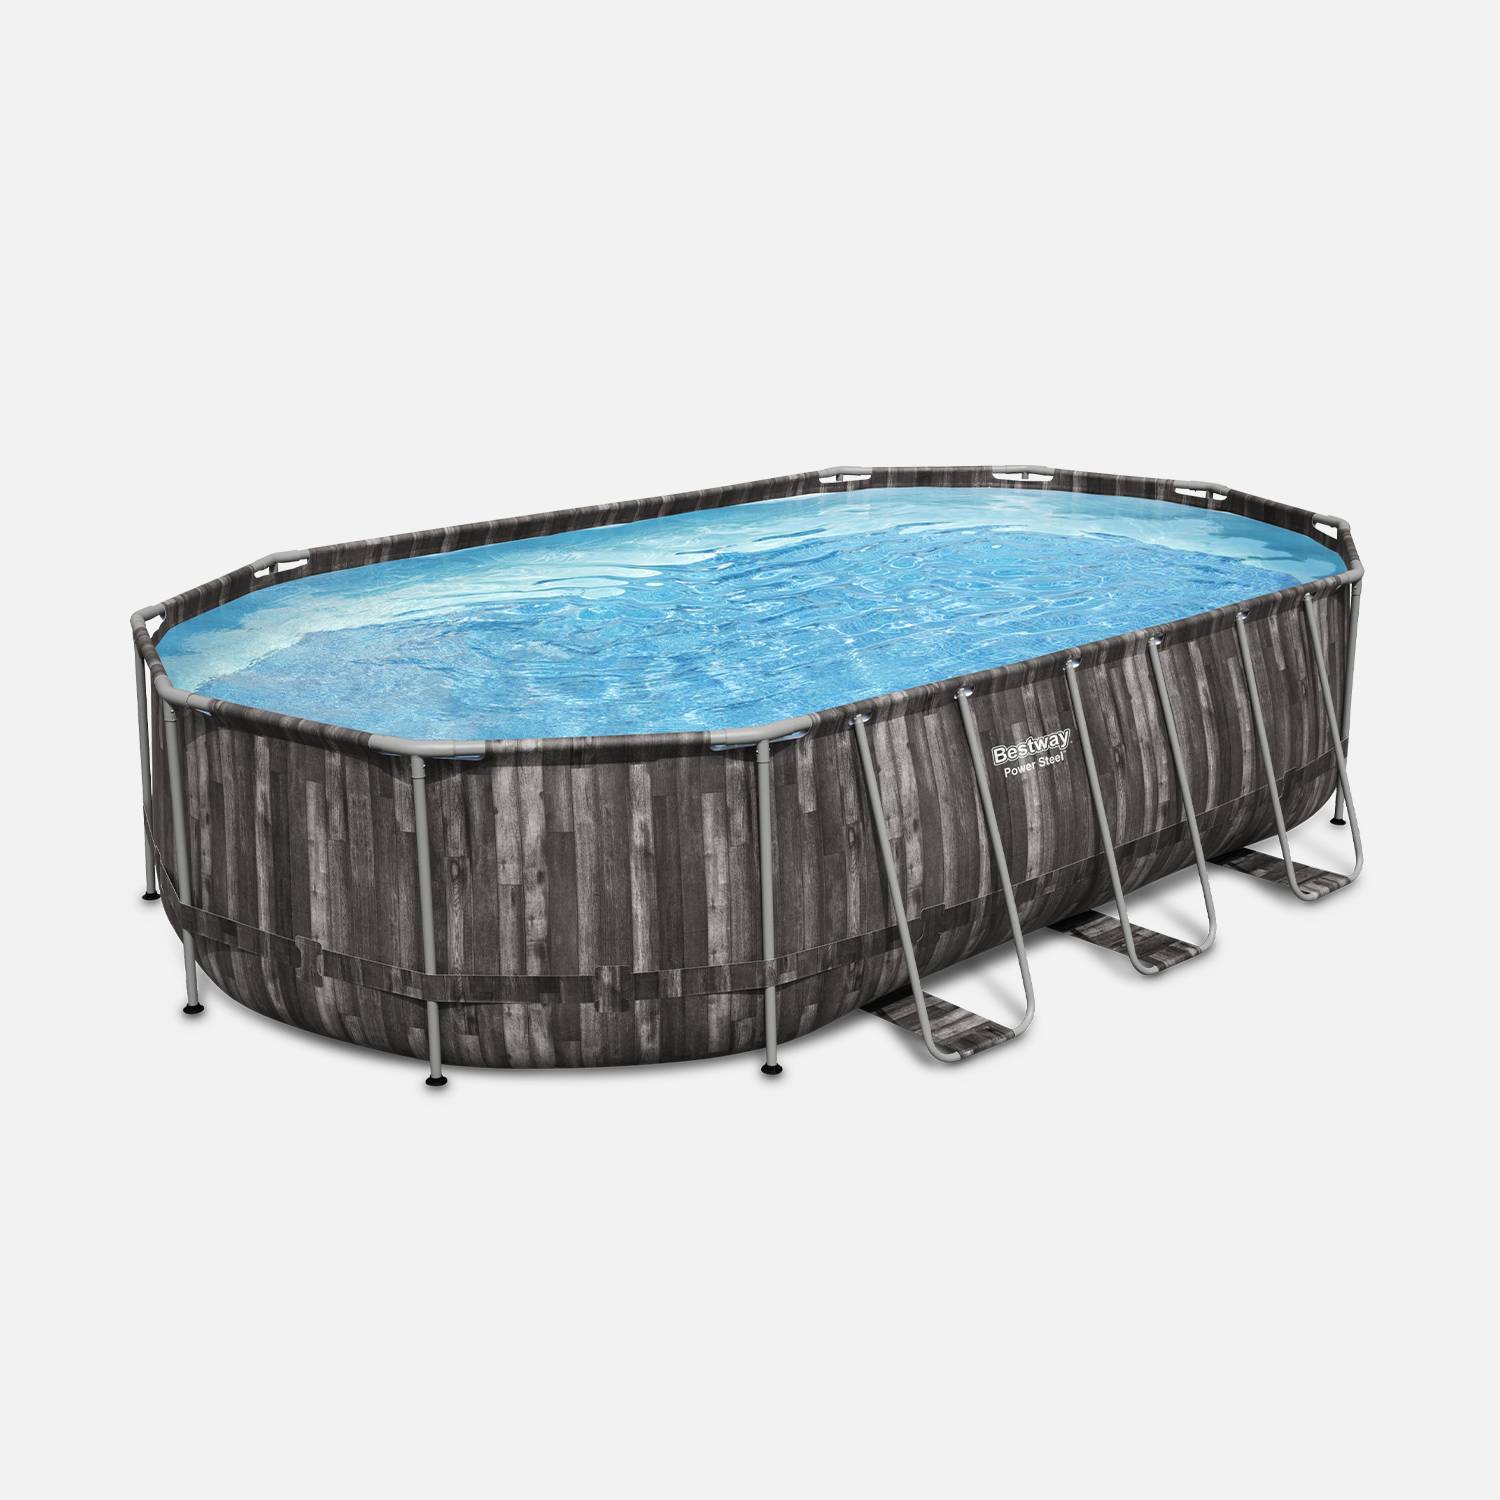 Kit piscine géante complet BESTWAY – Spinelle – piscine ovale tubulaire 6x3 m motif aspect bois, pompe de filtration, échelle, bâche de protection, diffuseur ChemConnect Photo2